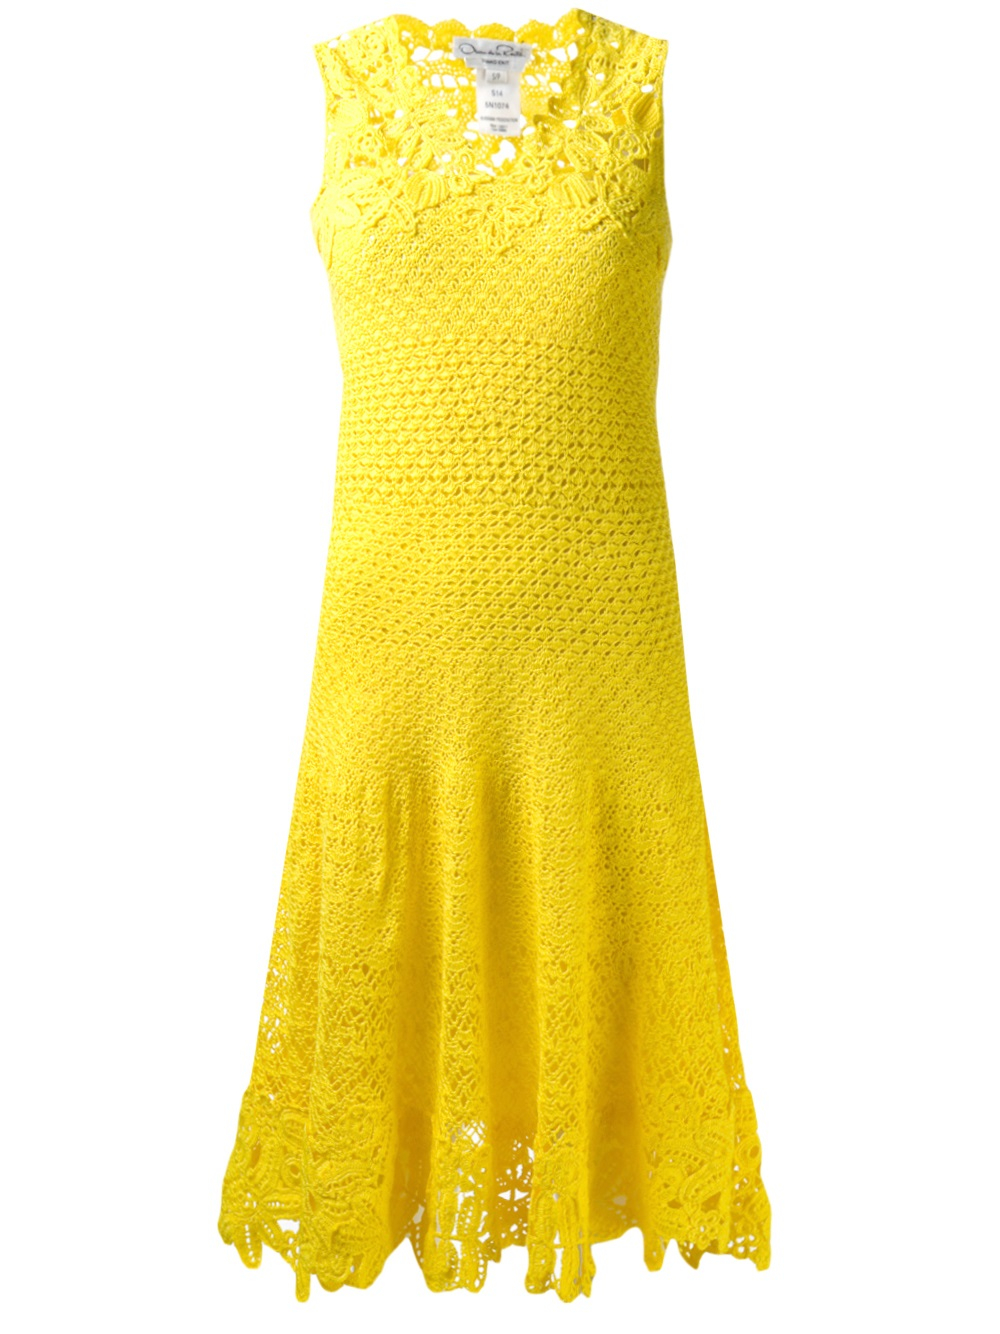 Lyst - Oscar de la renta Crochet Dress in Yellow